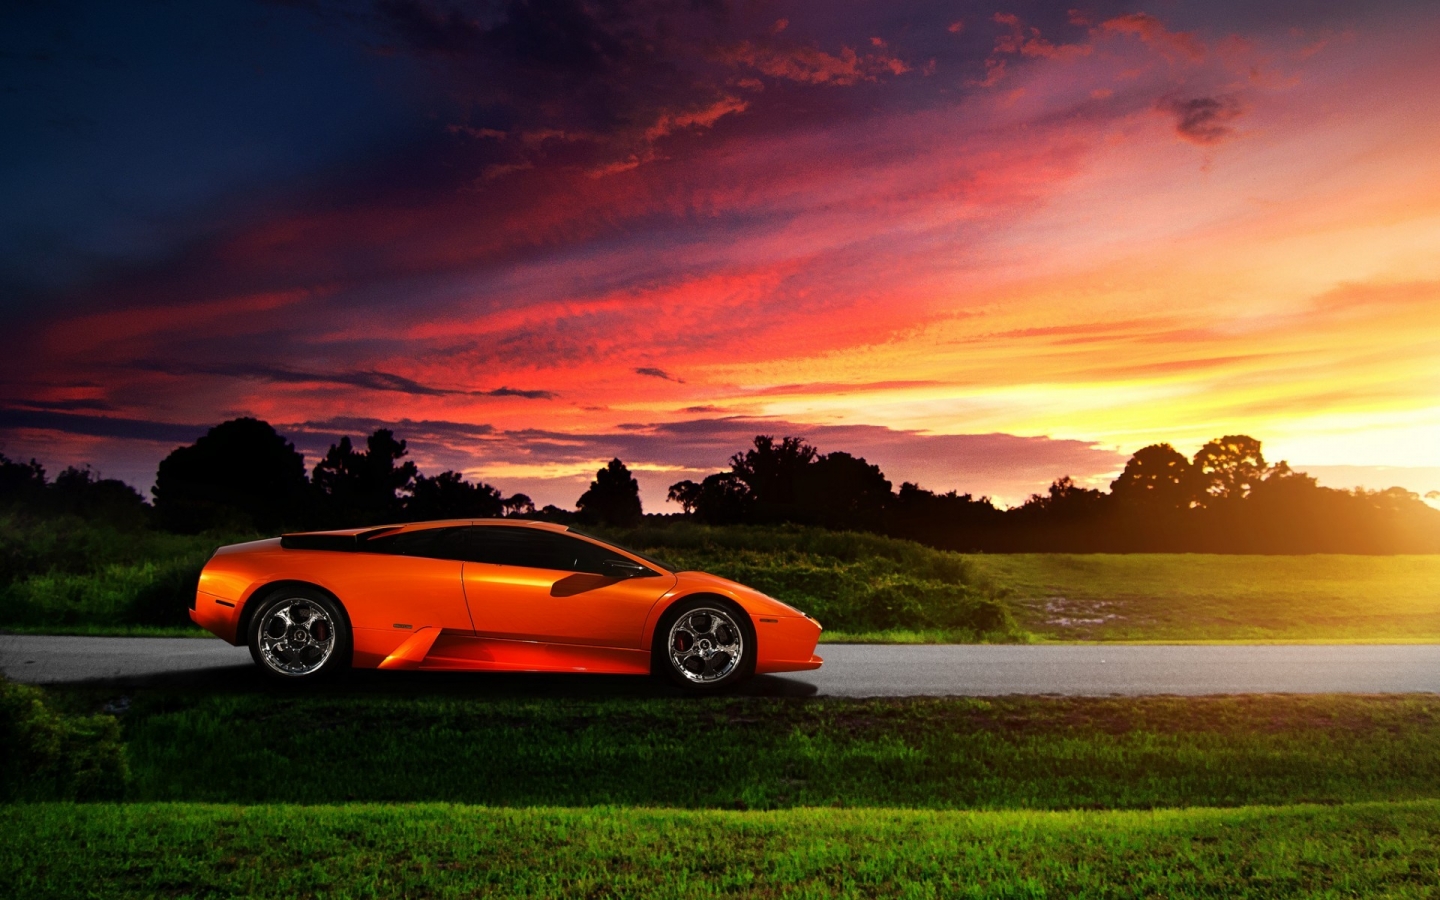 Lamborghini Murcielago Orange for 1440 x 900 widescreen resolution